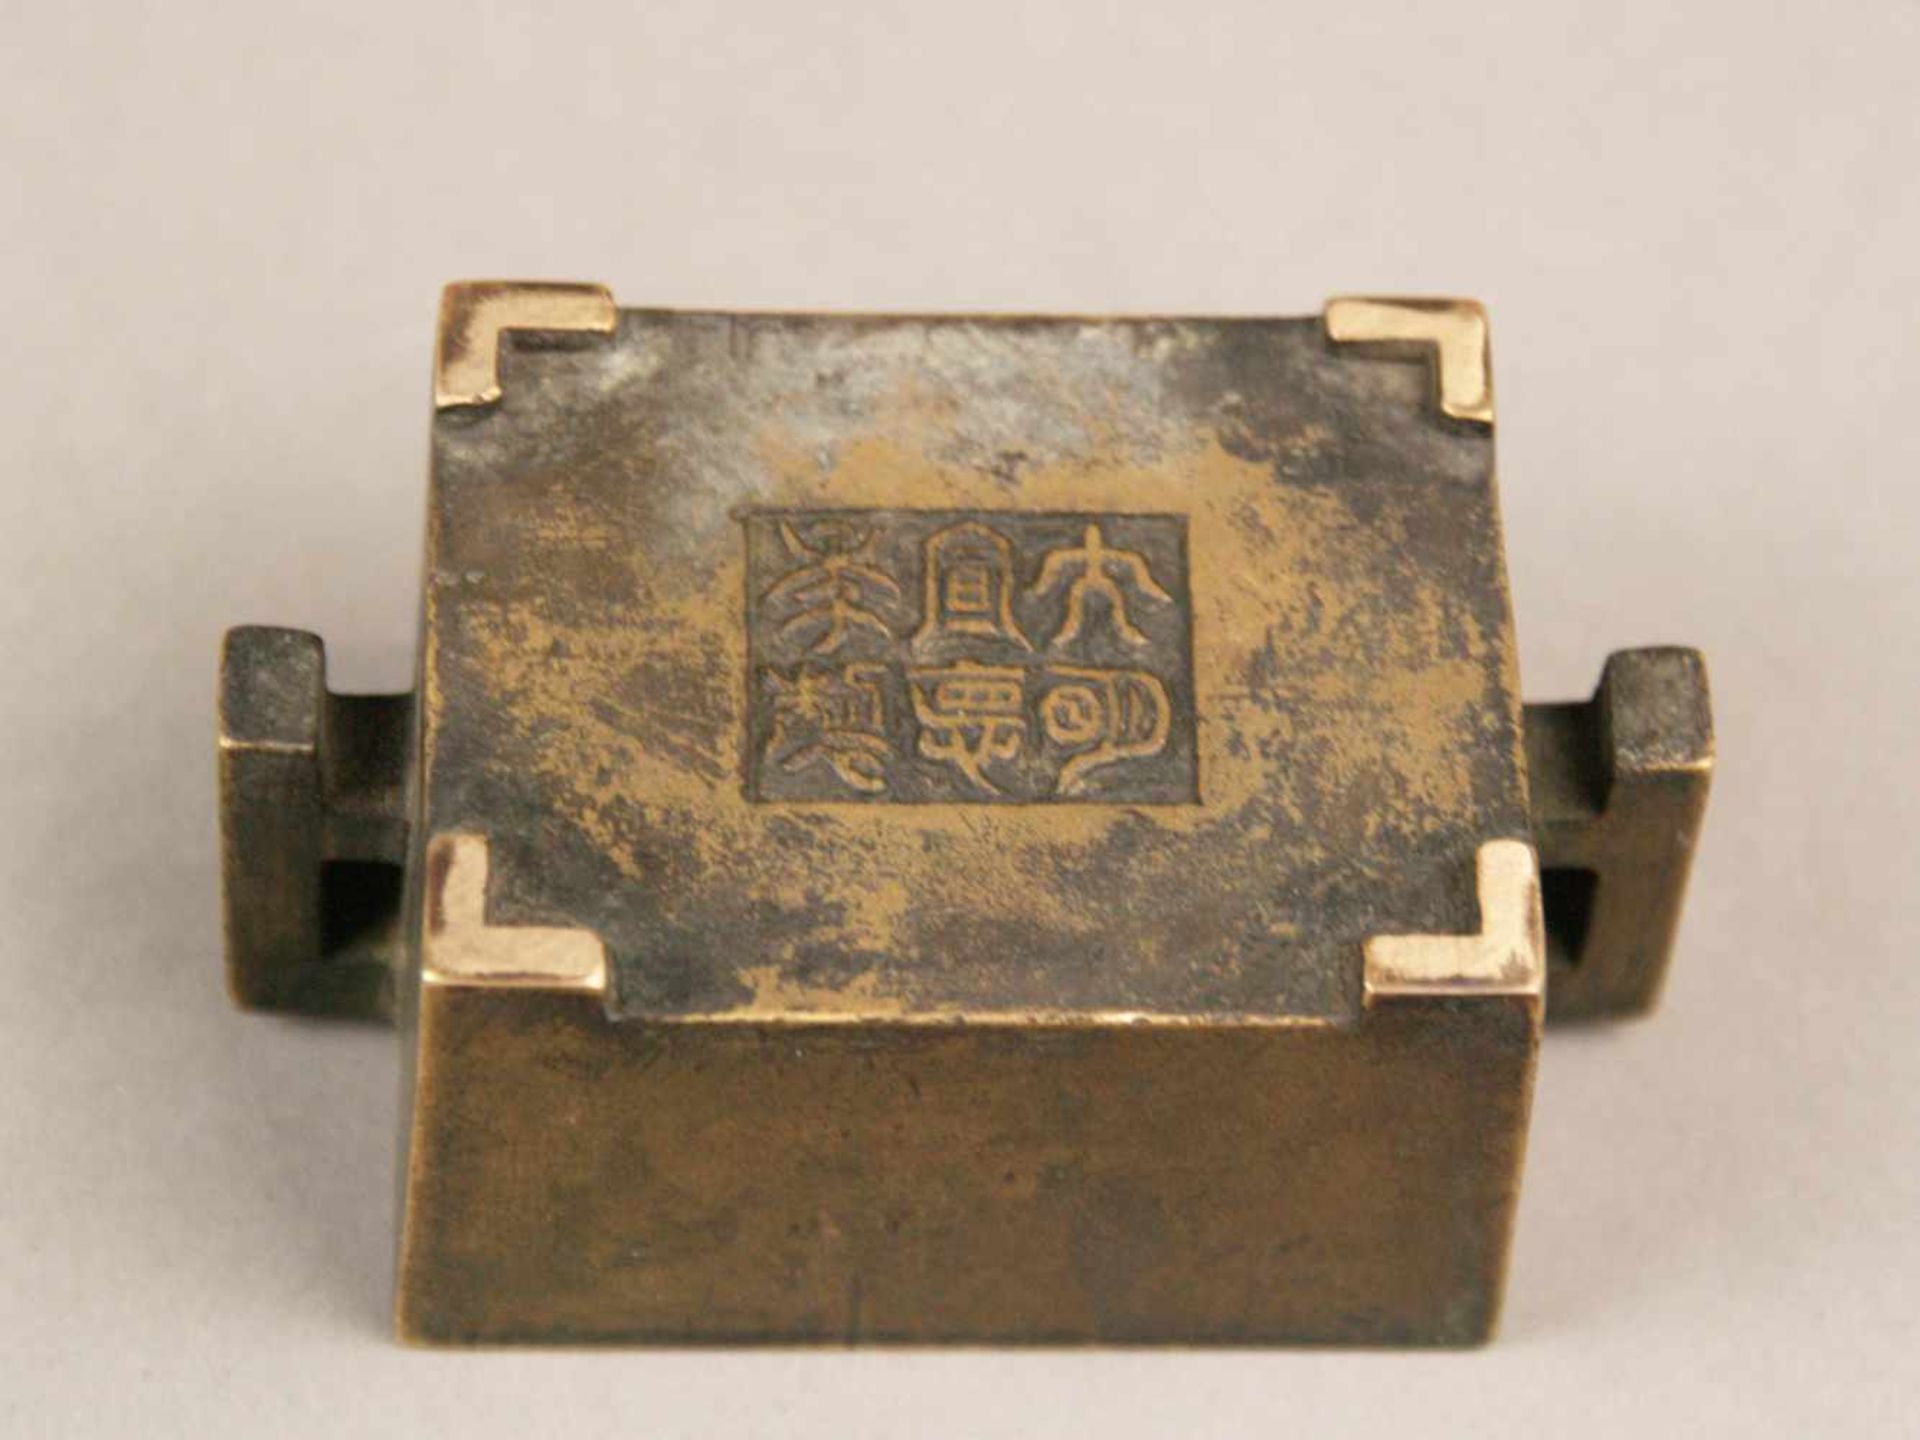 Kleines Räuchergefäß - China, Bronze, Typus "Fang Ding" im archaischem Stil,rechteckiges Becken - Image 5 of 6